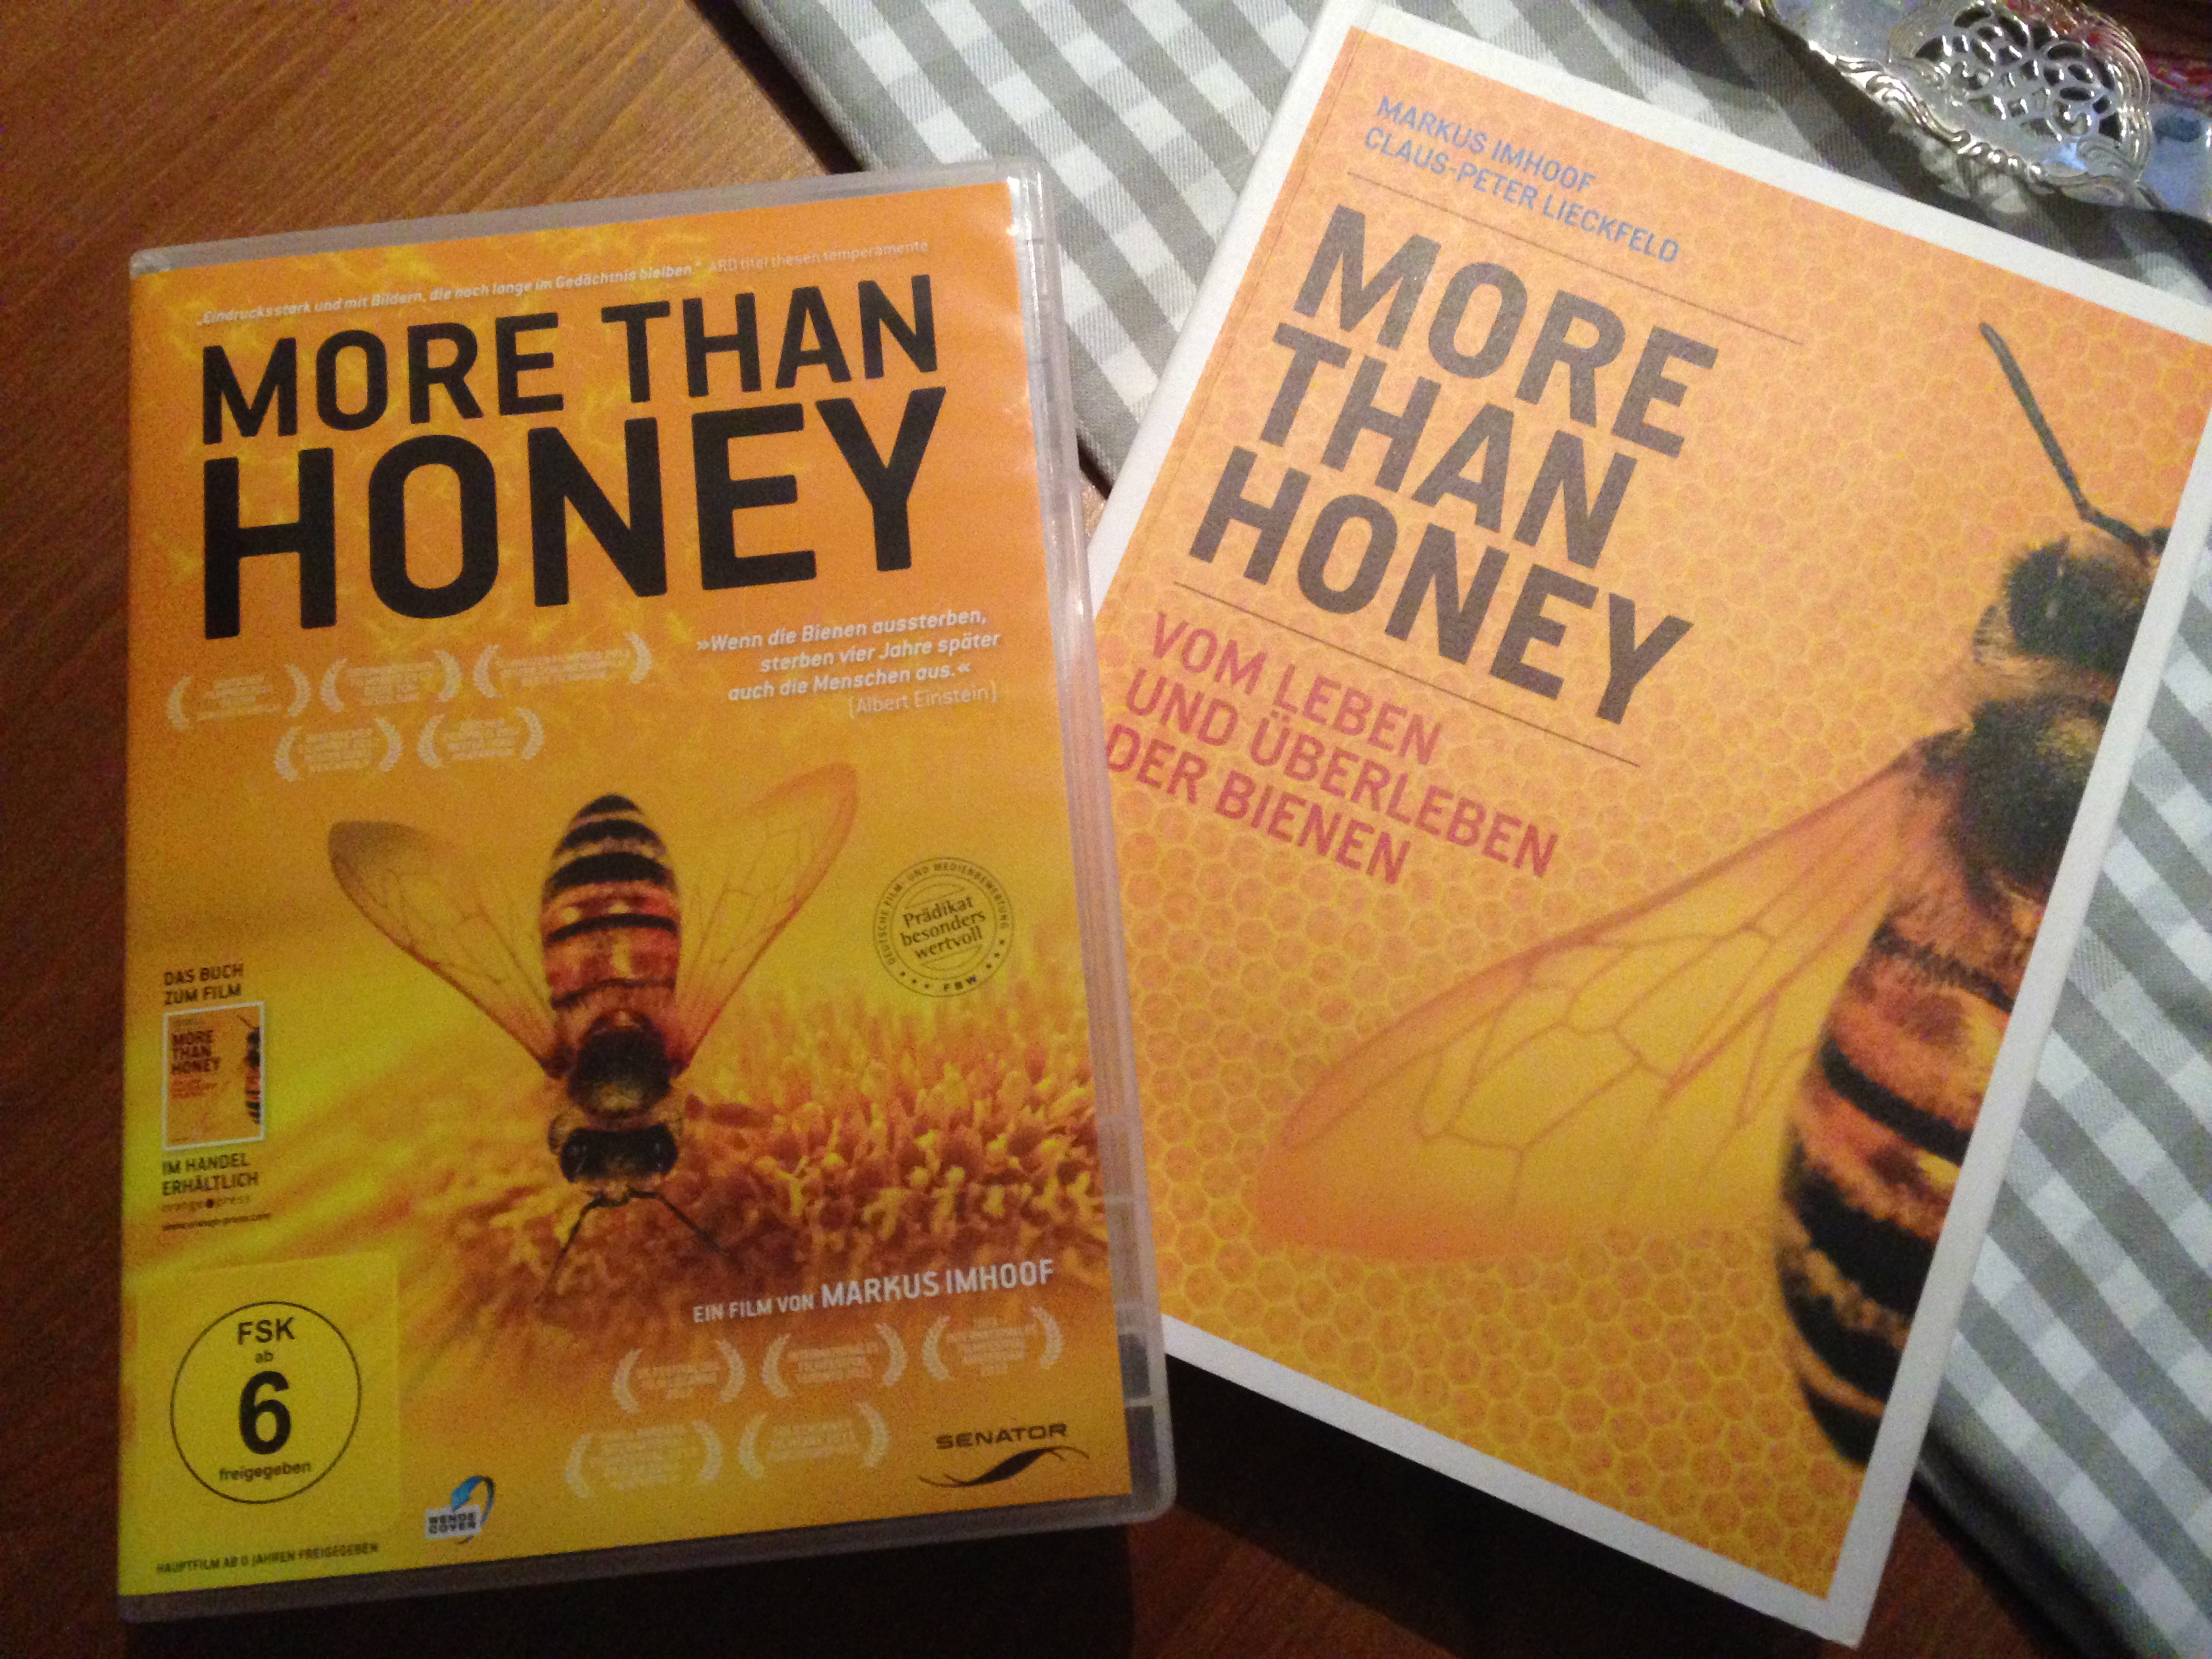 Endlich hat mir das mit den Bienchen und Blümchen mal jemand richtig erklärt: “More than honey”